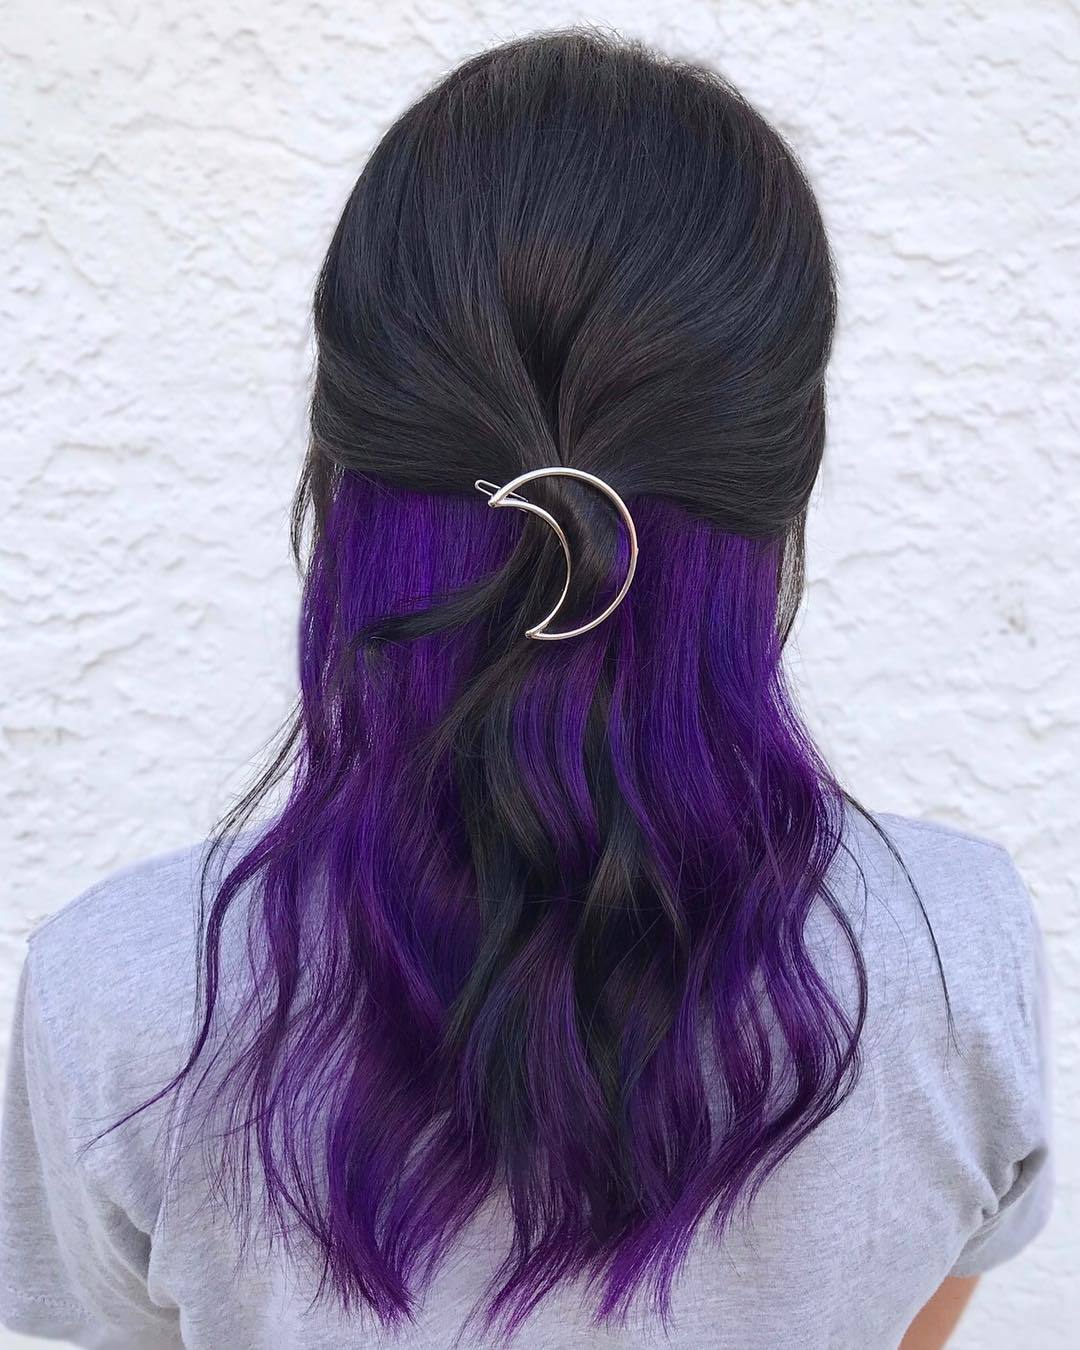 peekaboo warna ungu gelap pada rambut hitam